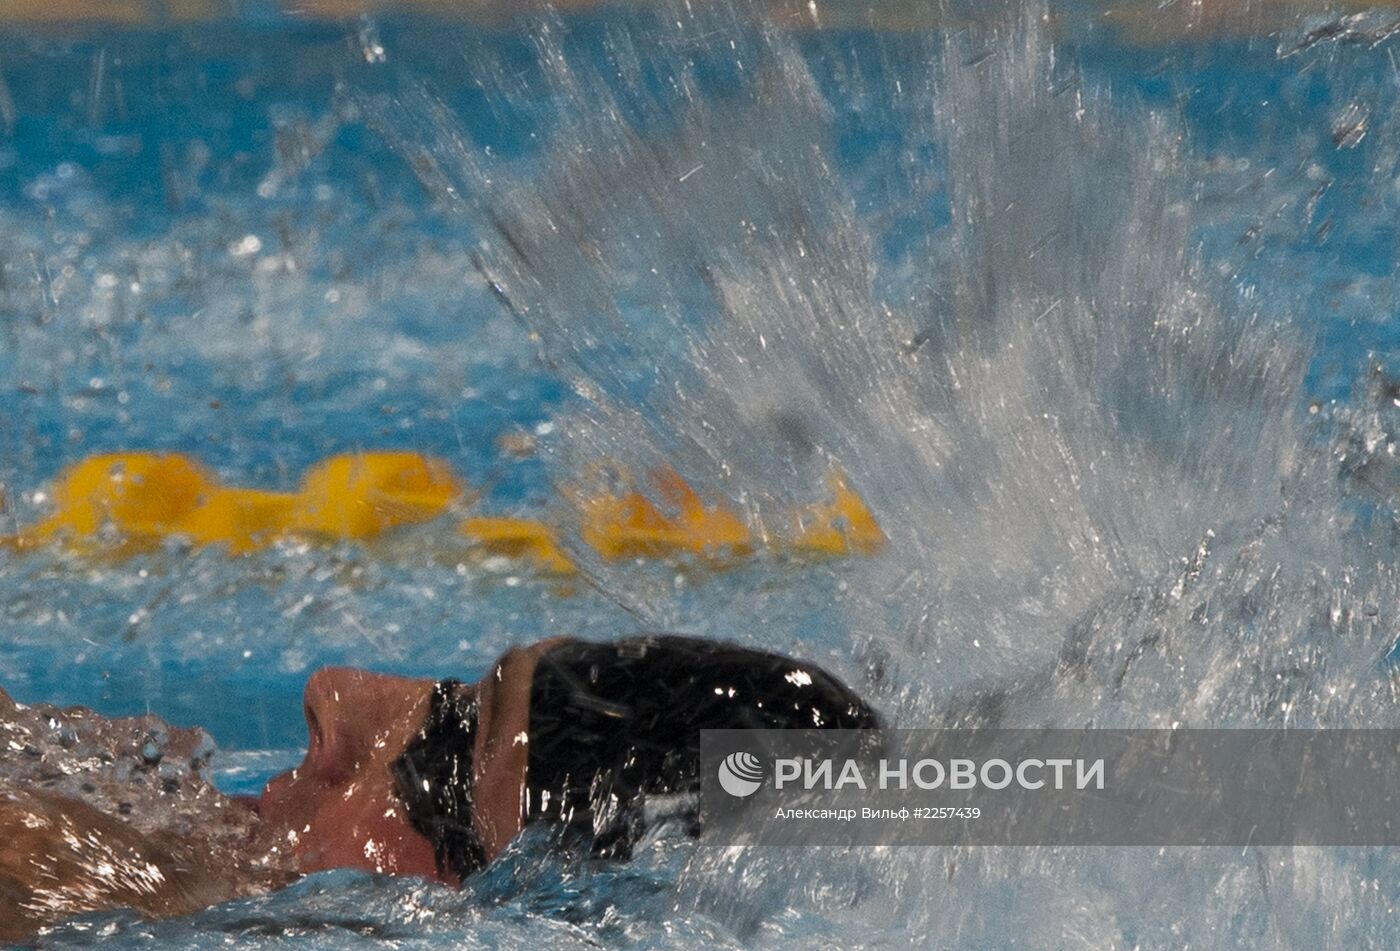 Чемпионат мира по водным видам спорта. 14-й день. Плавание